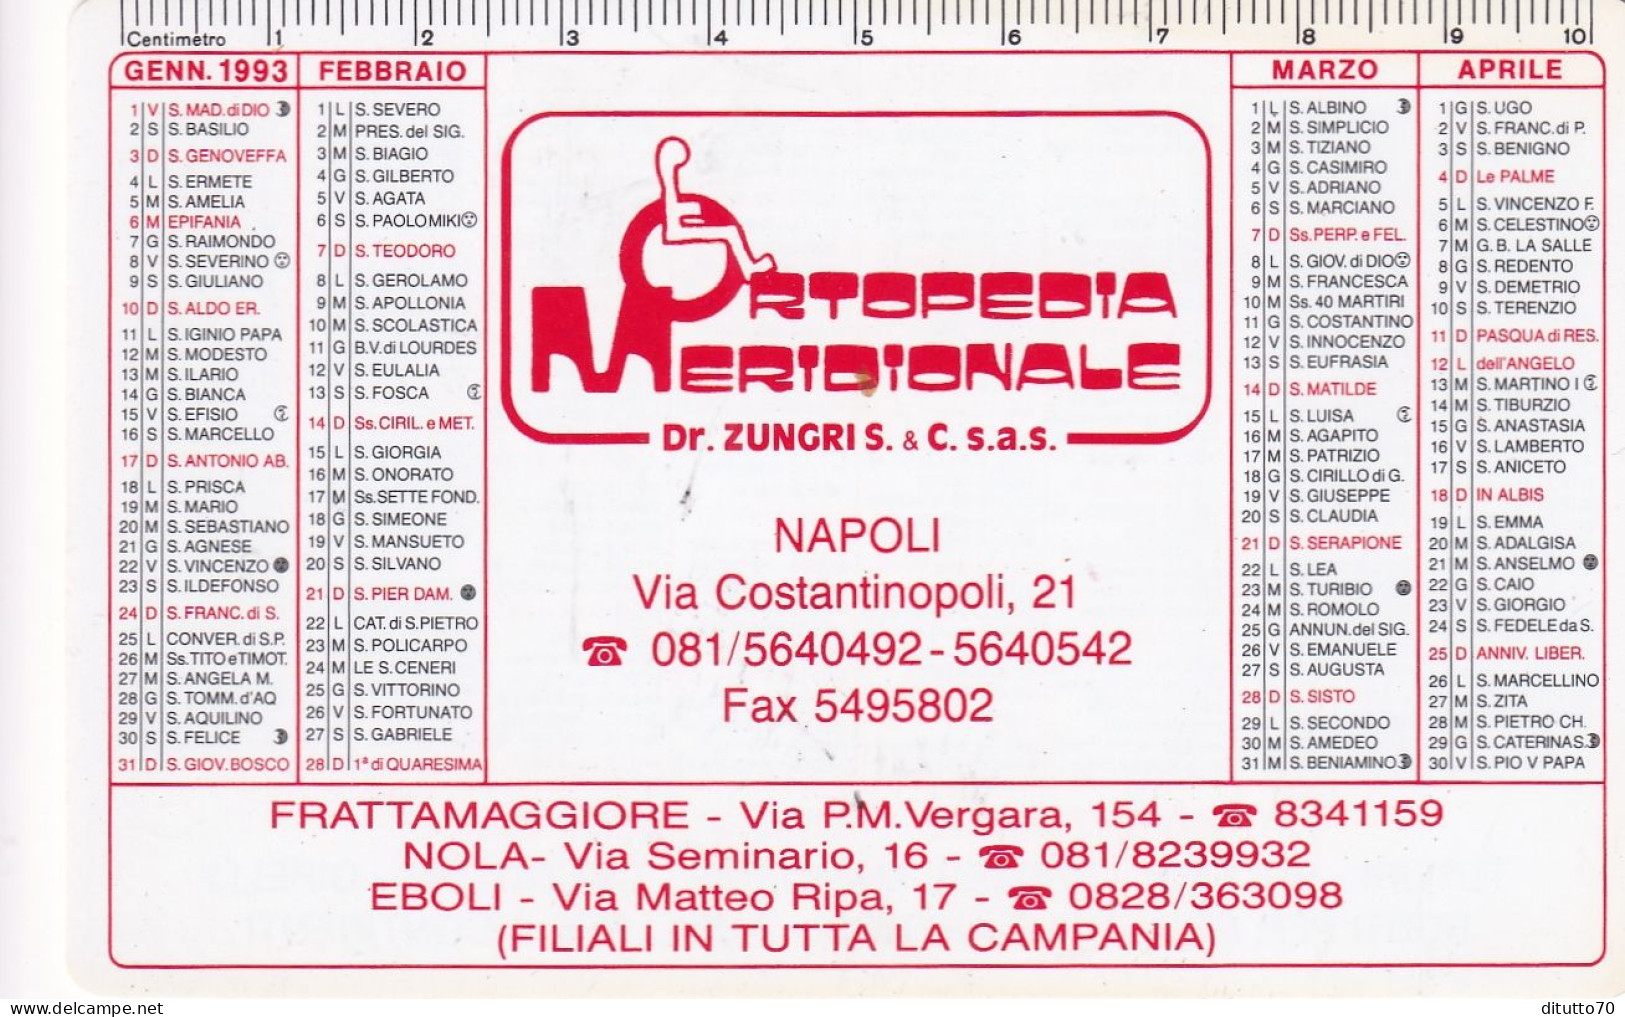 Calendarietto - Ortepedia Meridoniale - Napoli - Anno 1995 - Small : 1991-00